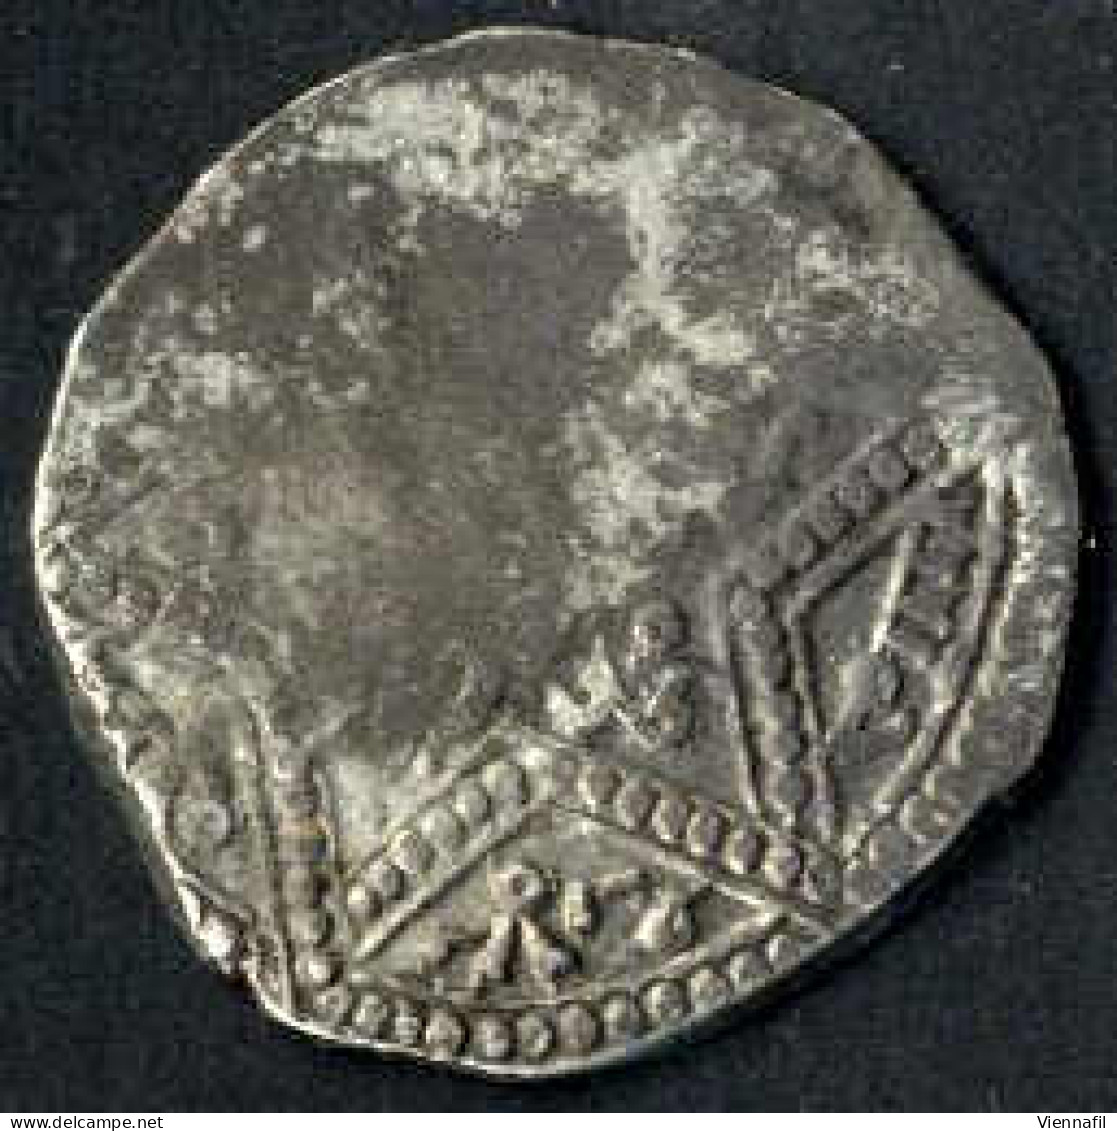 En-Nasir Yusuf II, 634-658AH 1236-1259, Dirham Silber, Verschiedene Jahre Haleb, Balog 745,748,749,751, Sehr Gut Bis Sch - Islamische Münzen